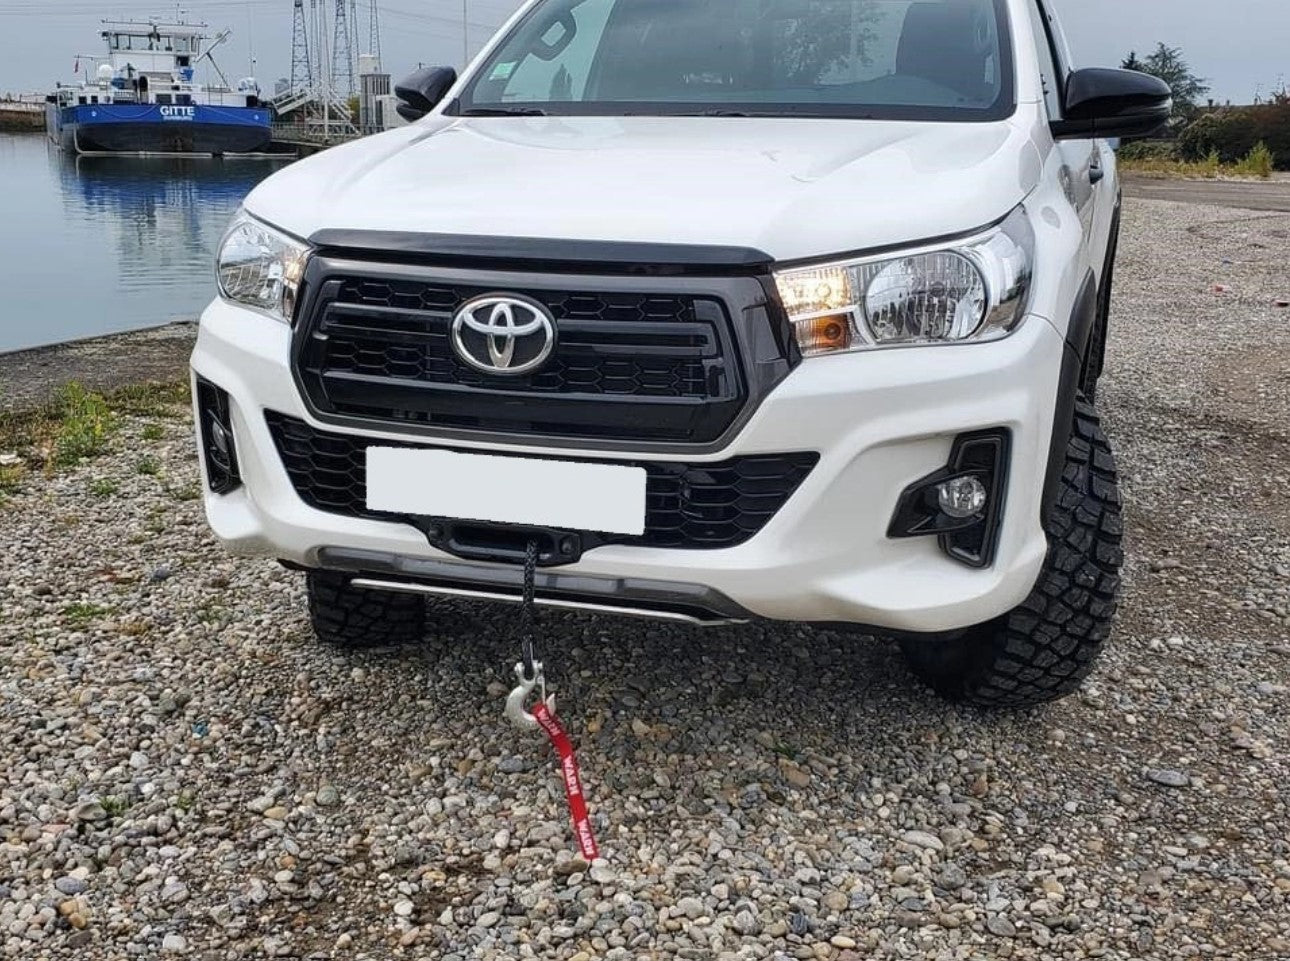 Toyota bianca di fronte a una barca con un cavo sporgente